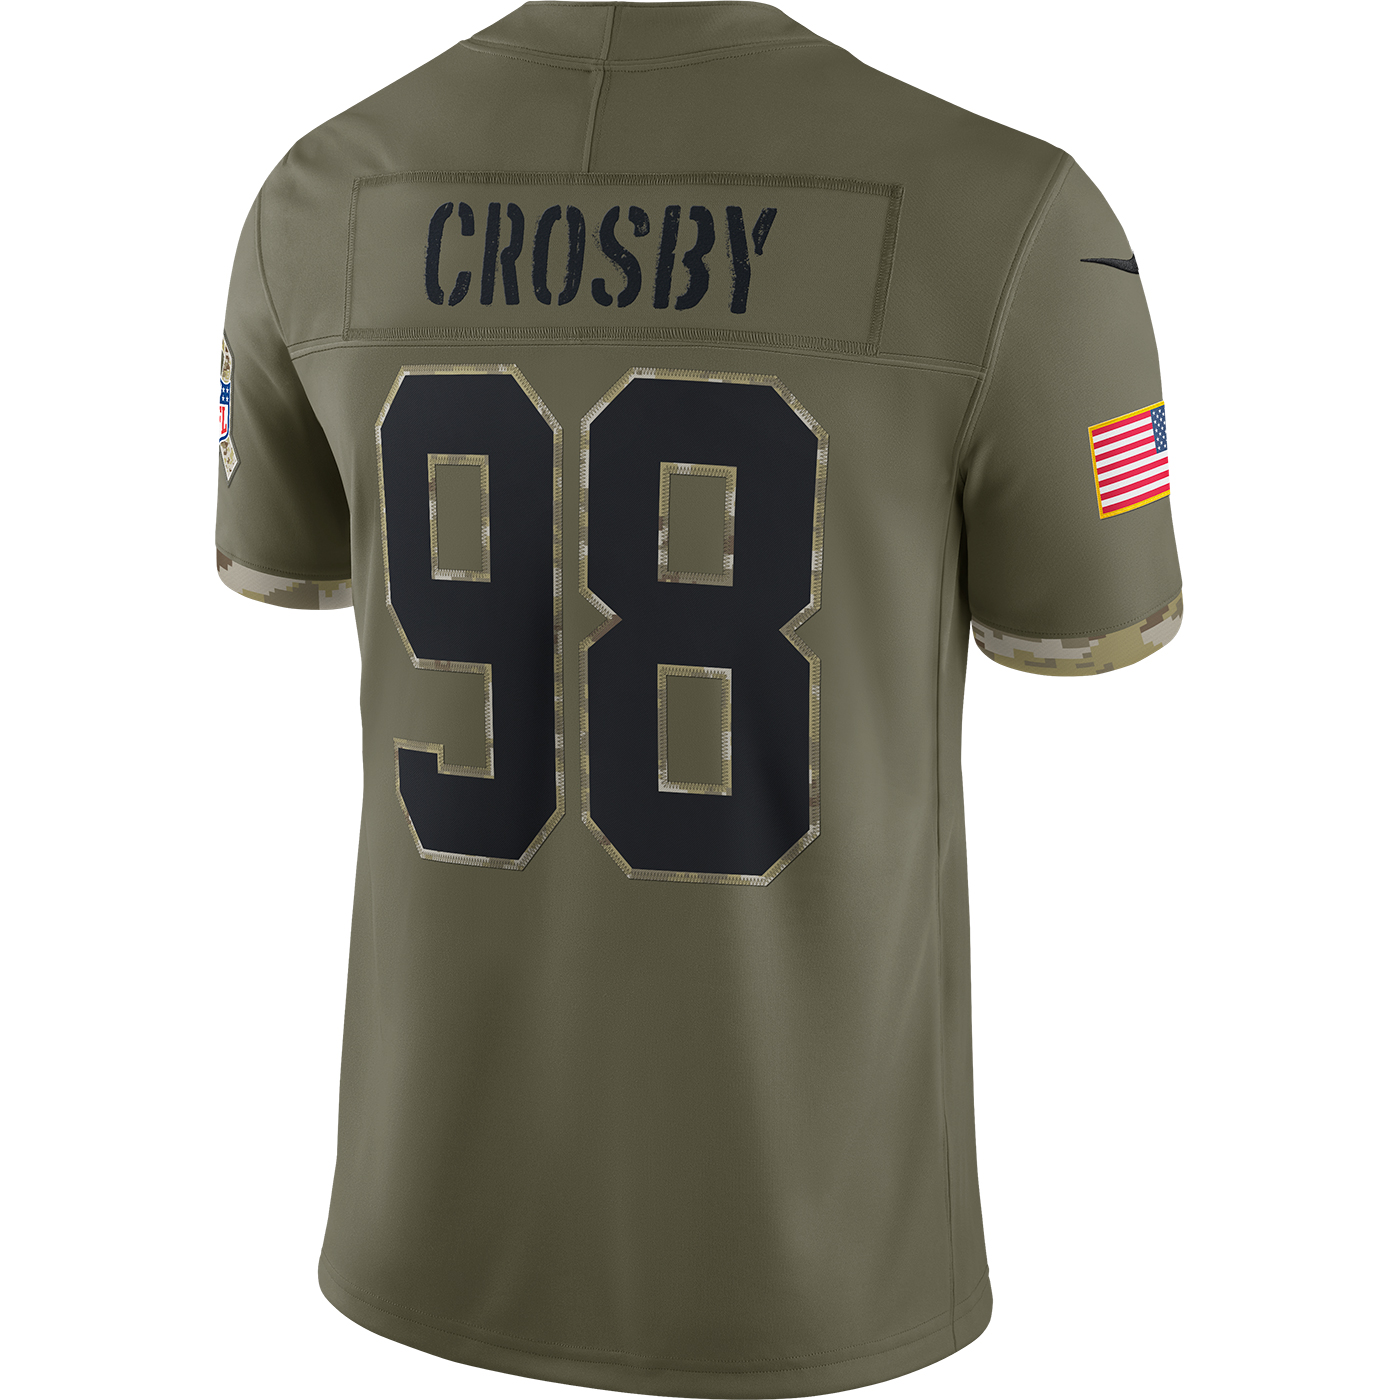 maxx crosby jersey shirt